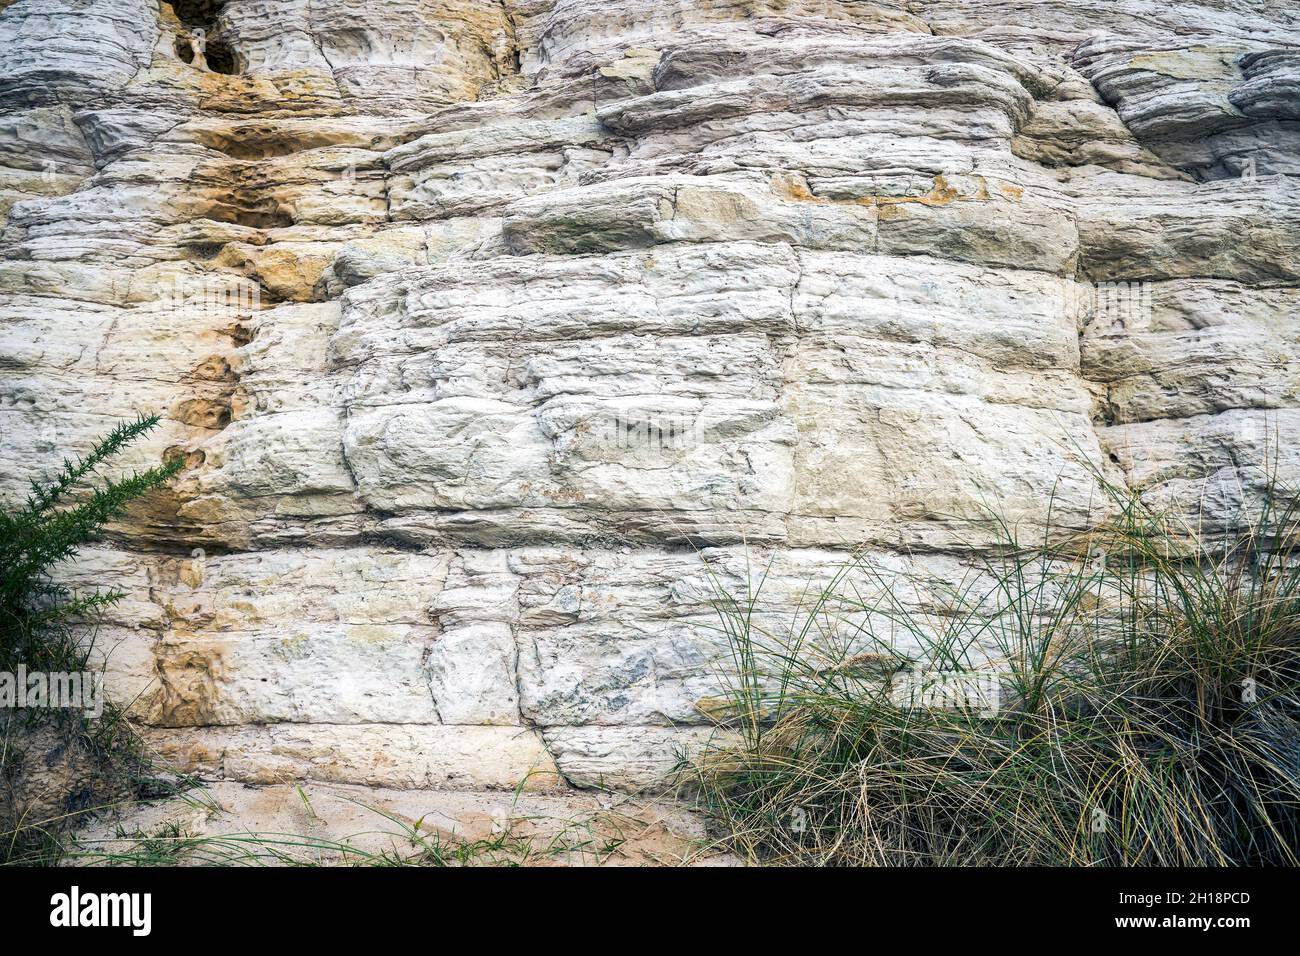 Des couches de roche de grès se sont formées pendant la période de l'Eocène qui composent la falaise est de Bournemouth, dans le Dorset, au Royaume-Uni Banque D'Images